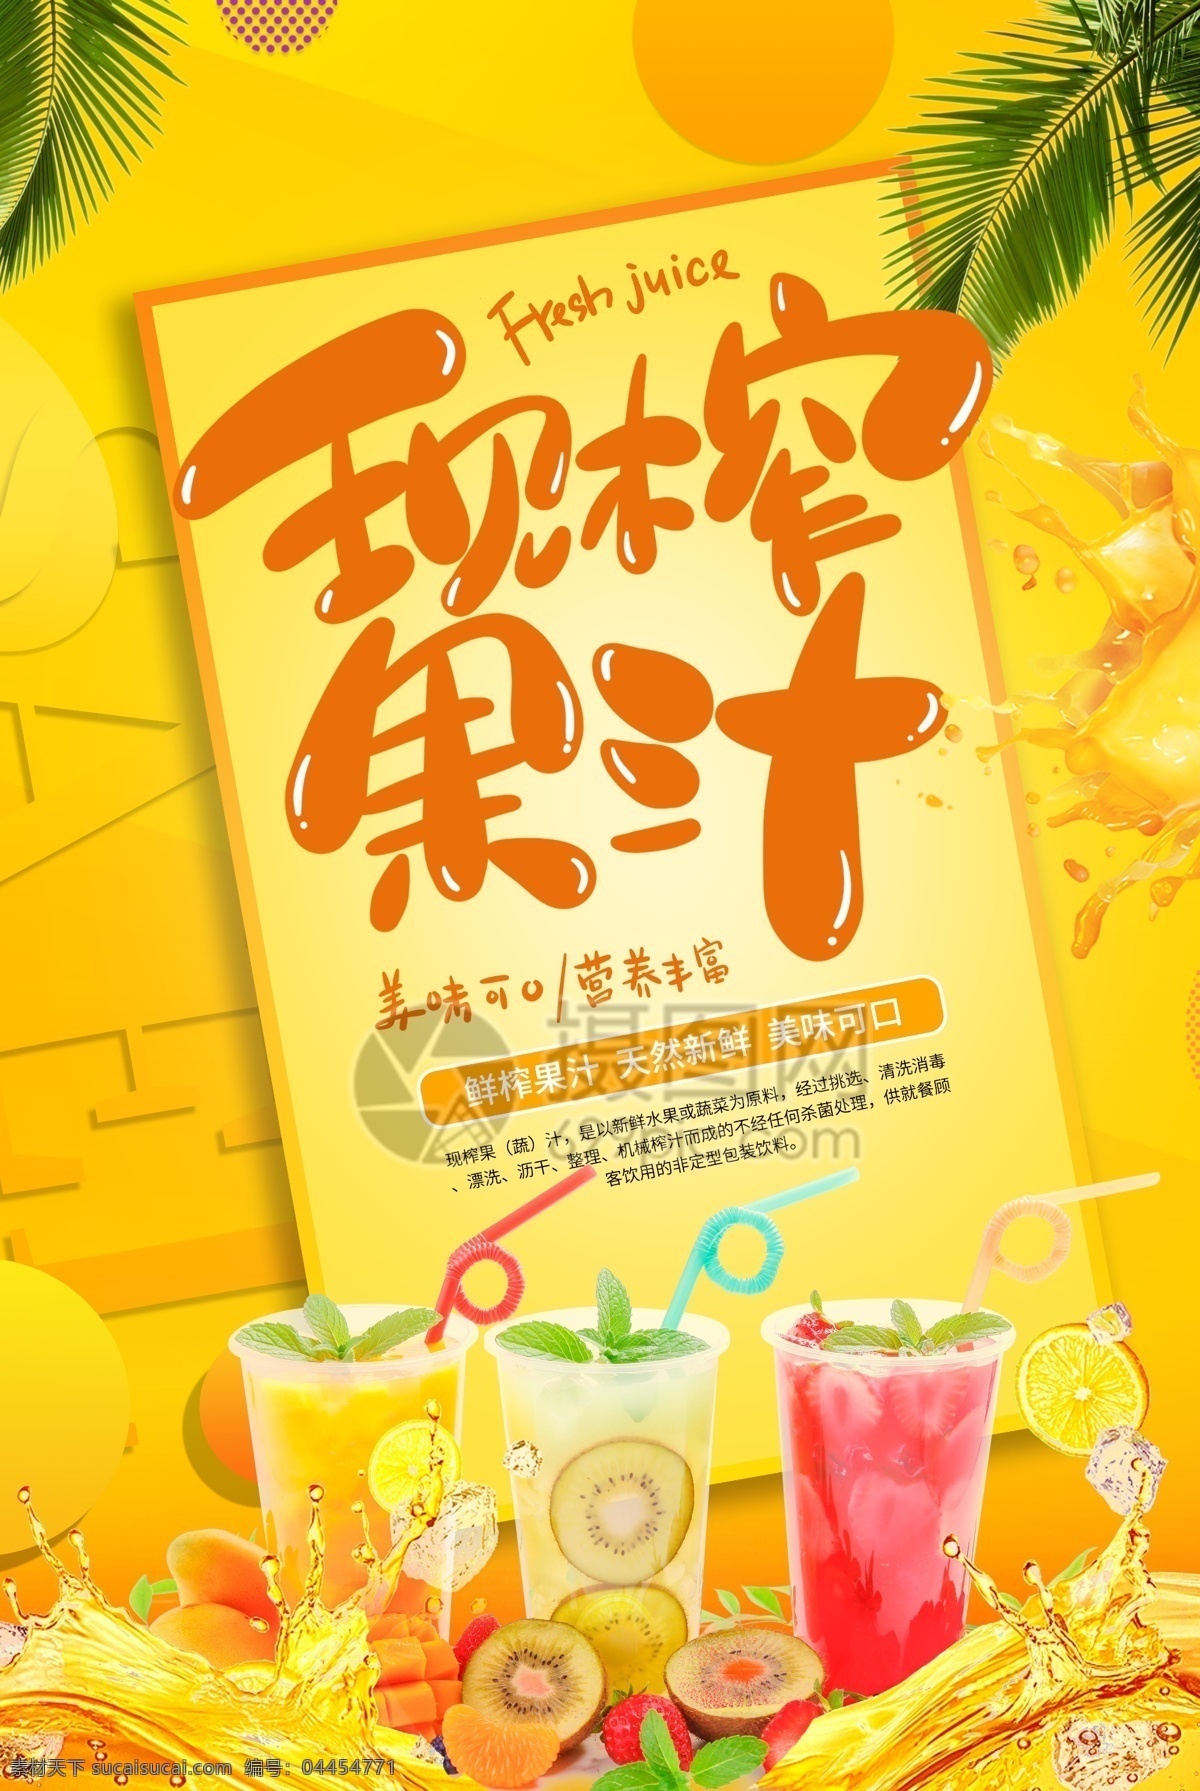 黄色 现 榨 果汁 海报 鲜榨果汁 水果海报 炸 橙汁海报 饮品 饮料促销